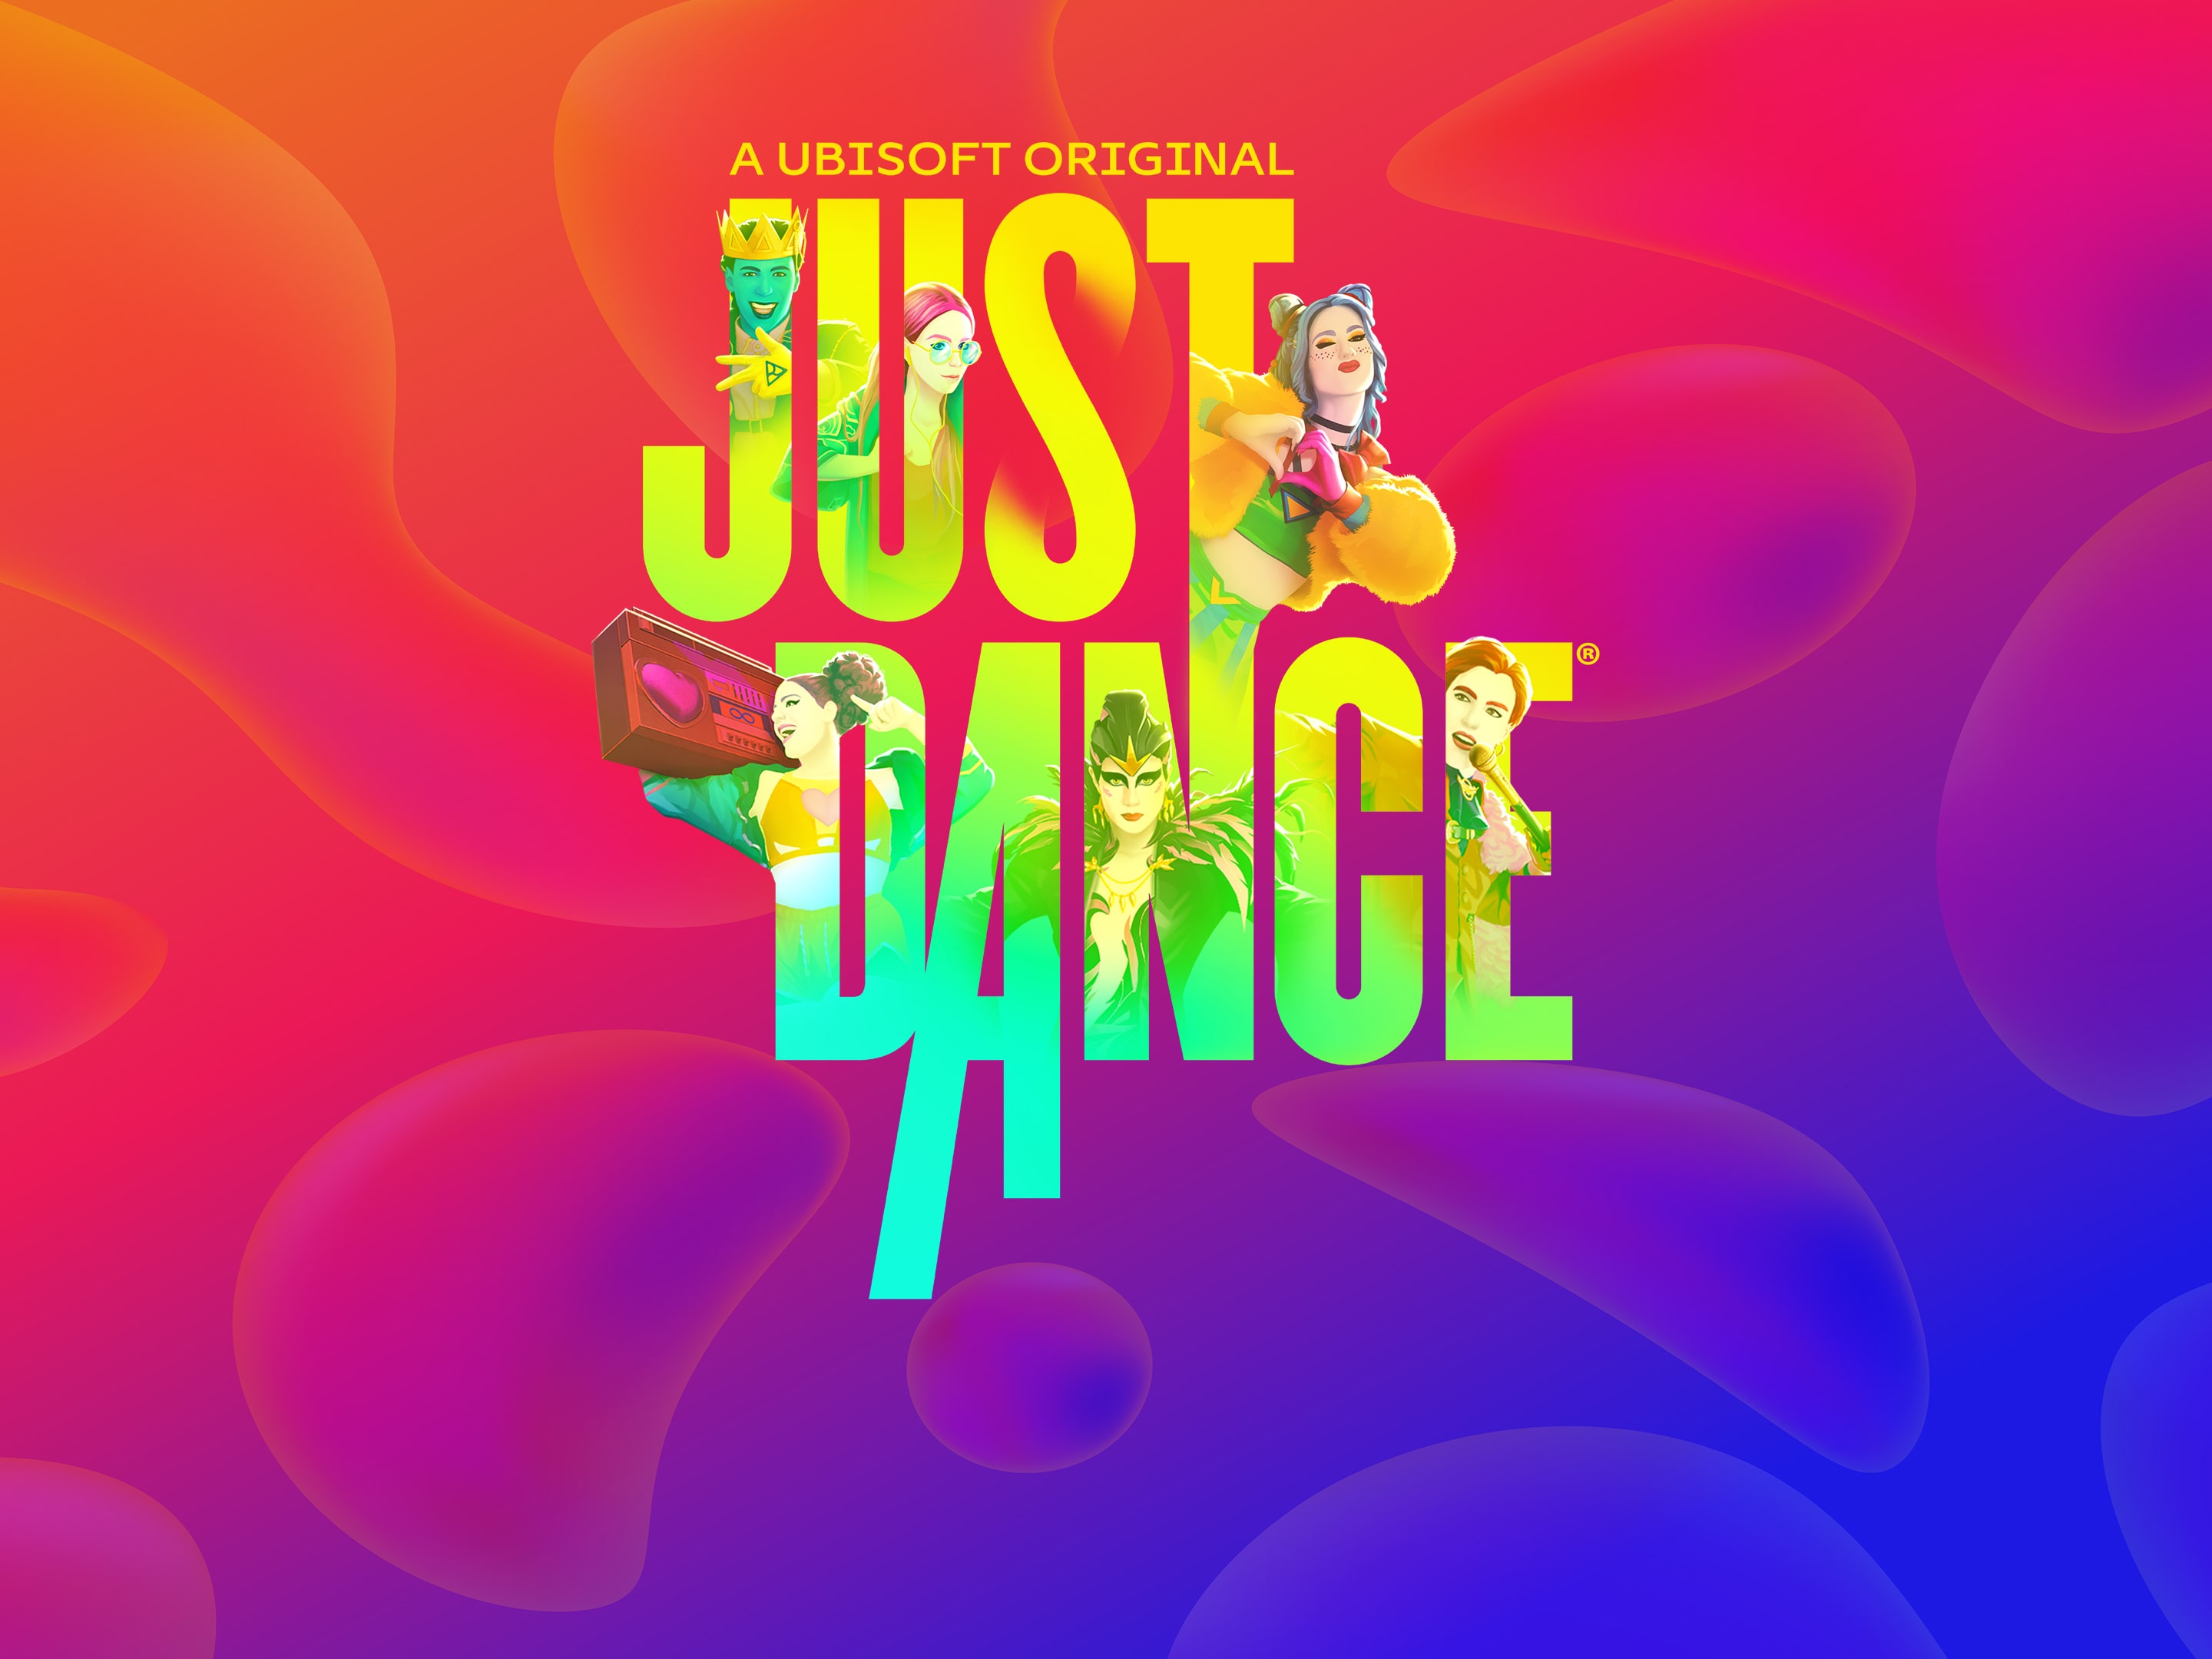 ▷ Just Dance 2022 [Descargar para PS4 y PS5] Juego Digital